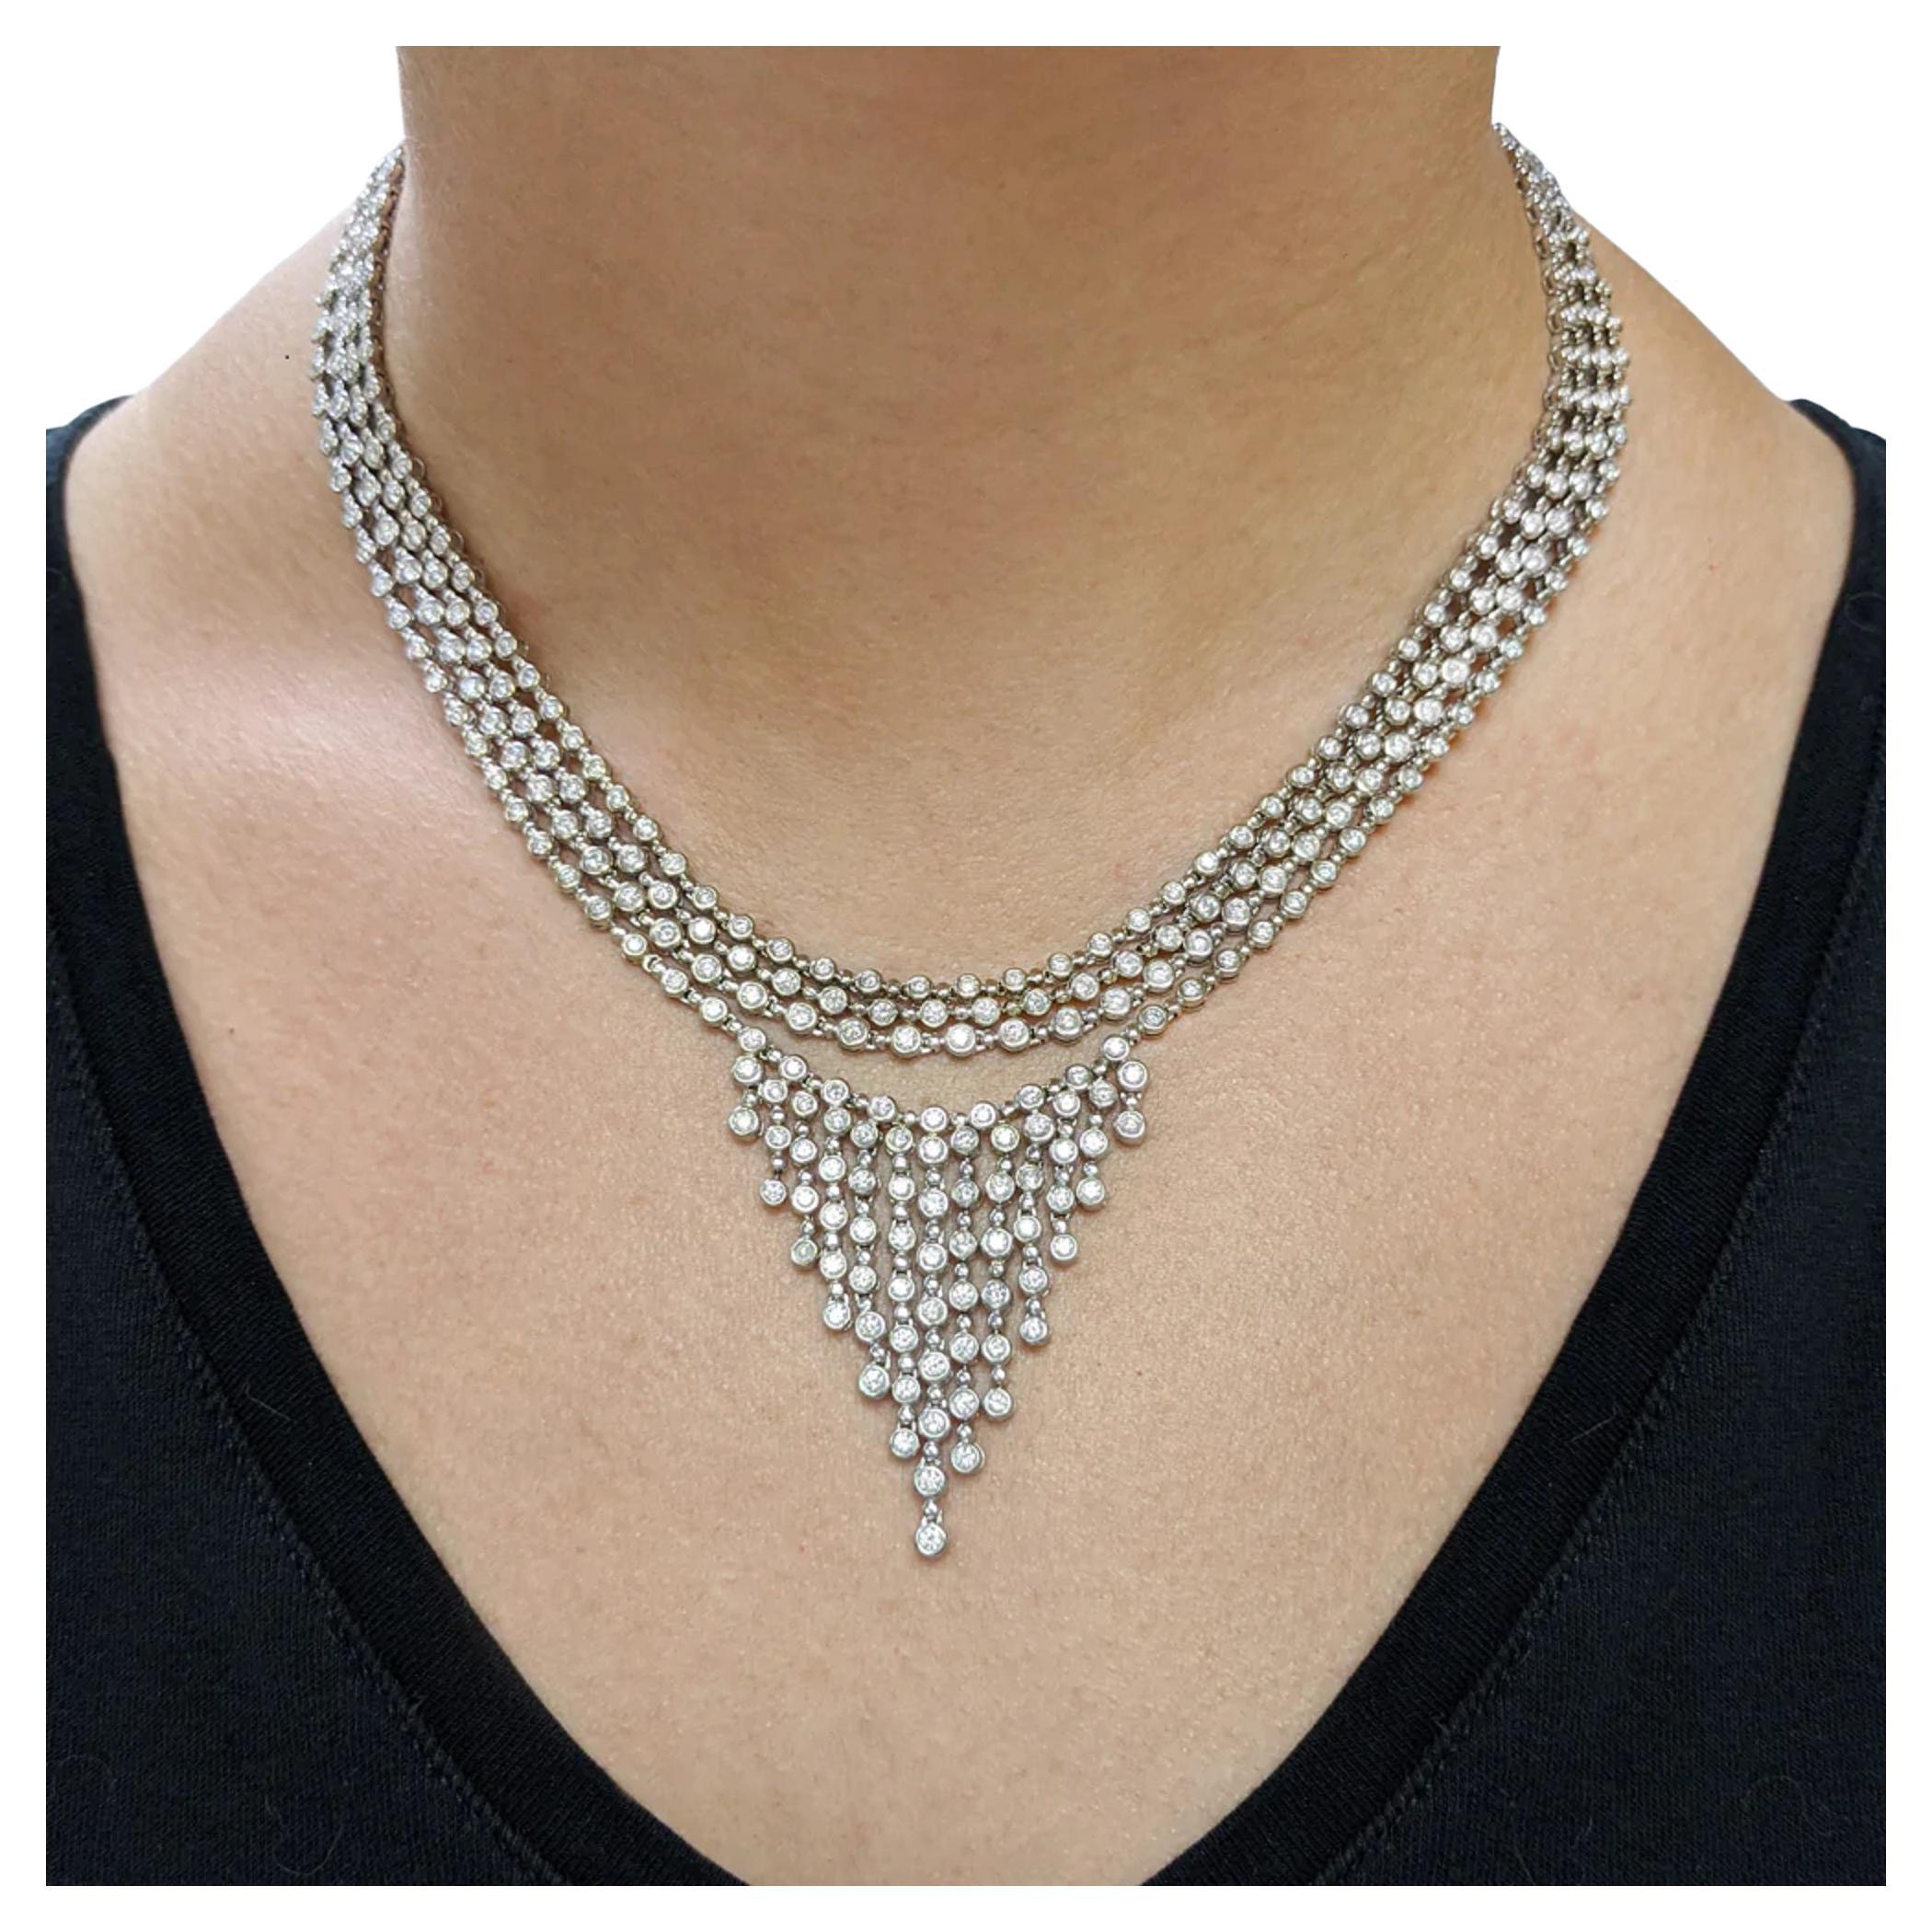 Exquisite 19.20 Carat Round Brilliant Cut Diamond High Luxury Necklace